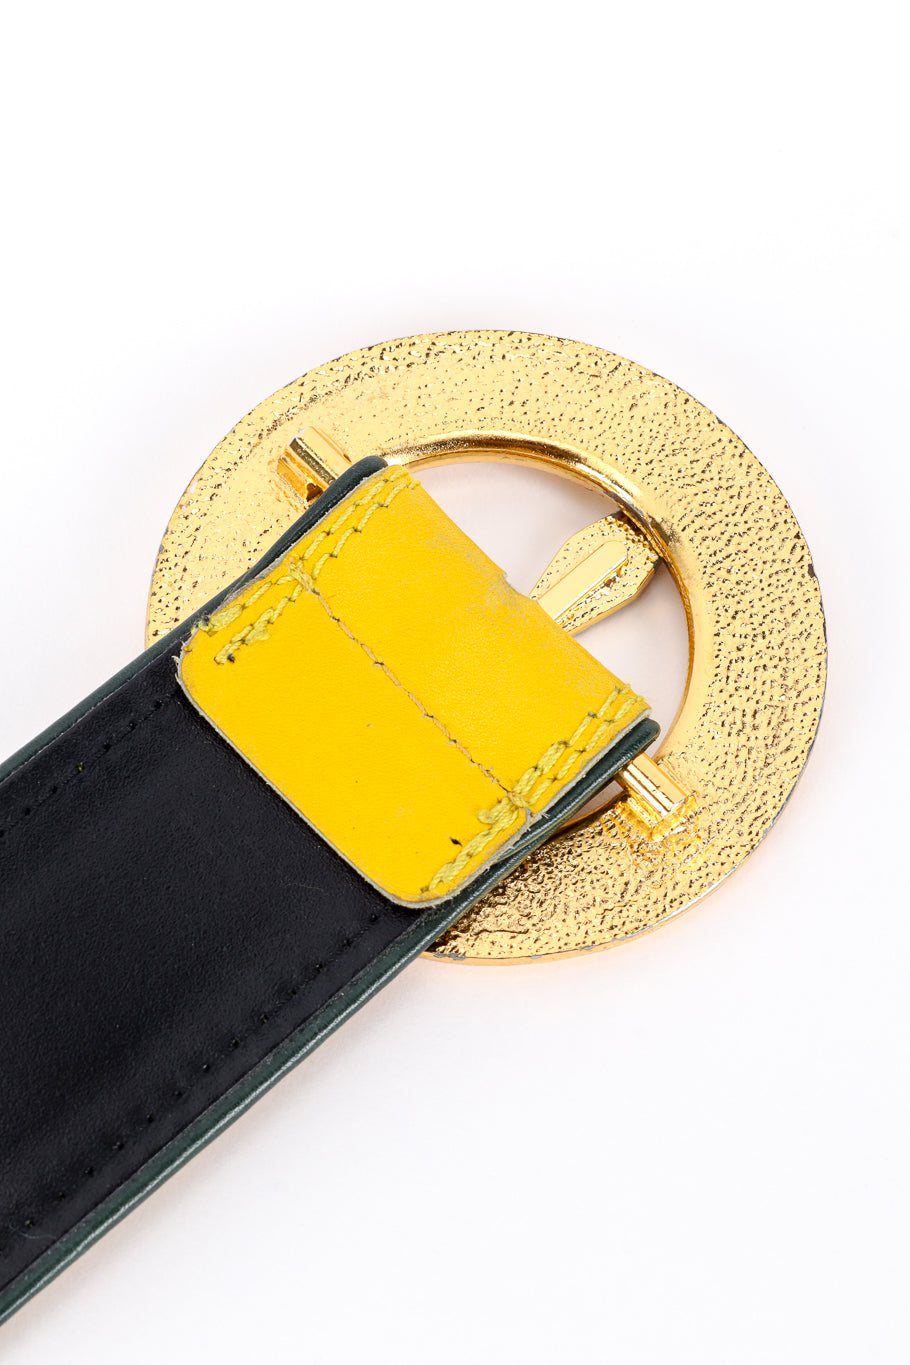 Vintage Escada Roman Clock Leather Belt II back of buckle closeup @recess la